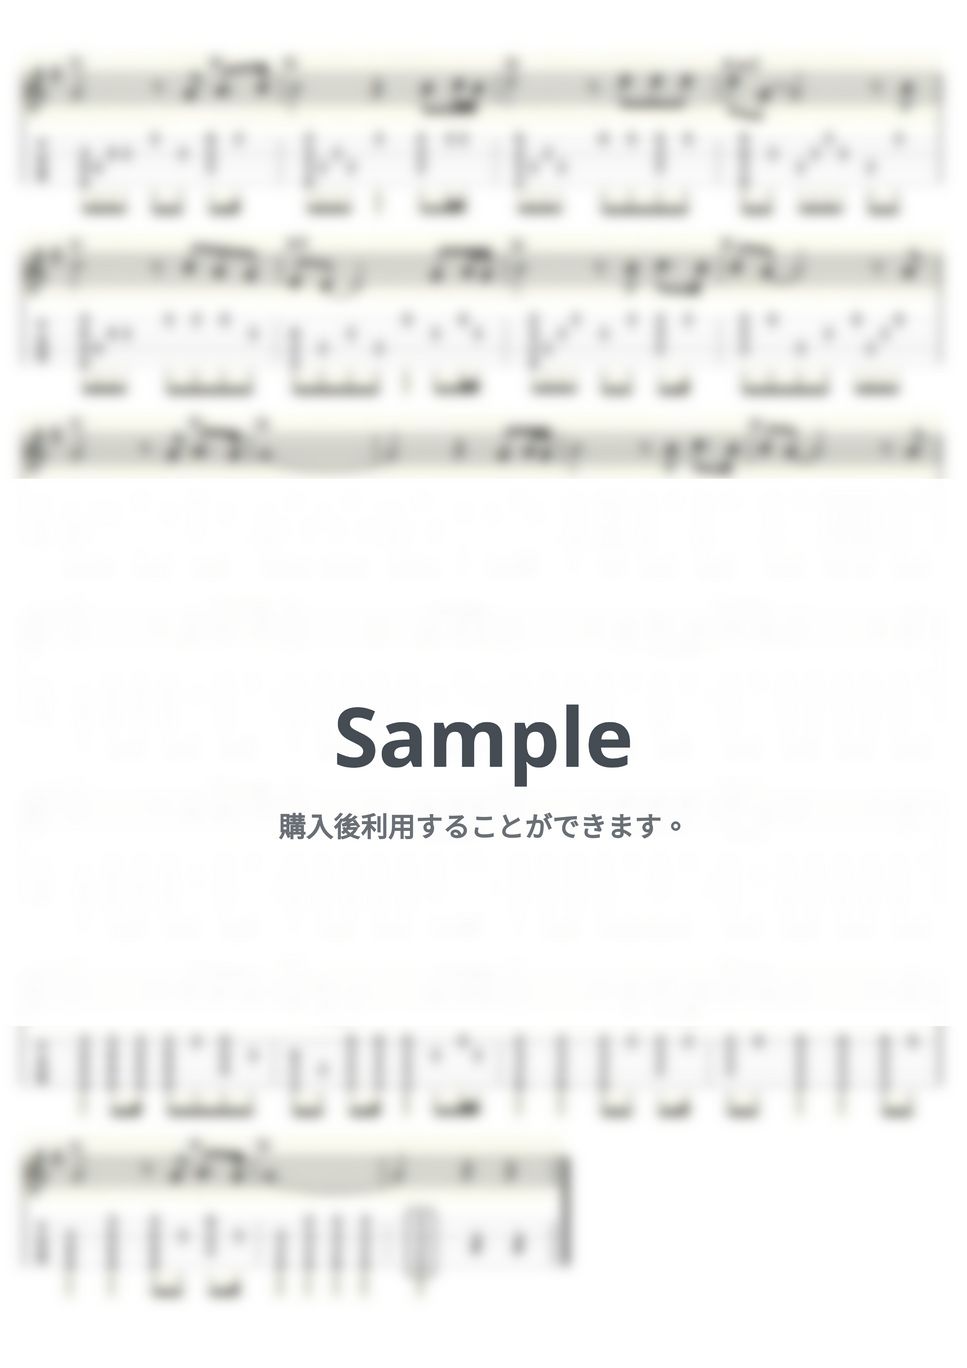 ベット・ミドラー - ローズ～The Rose～ (ｳｸﾚﾚｿﾛ / High-G・Low-G / 中級) by ukulelepapa